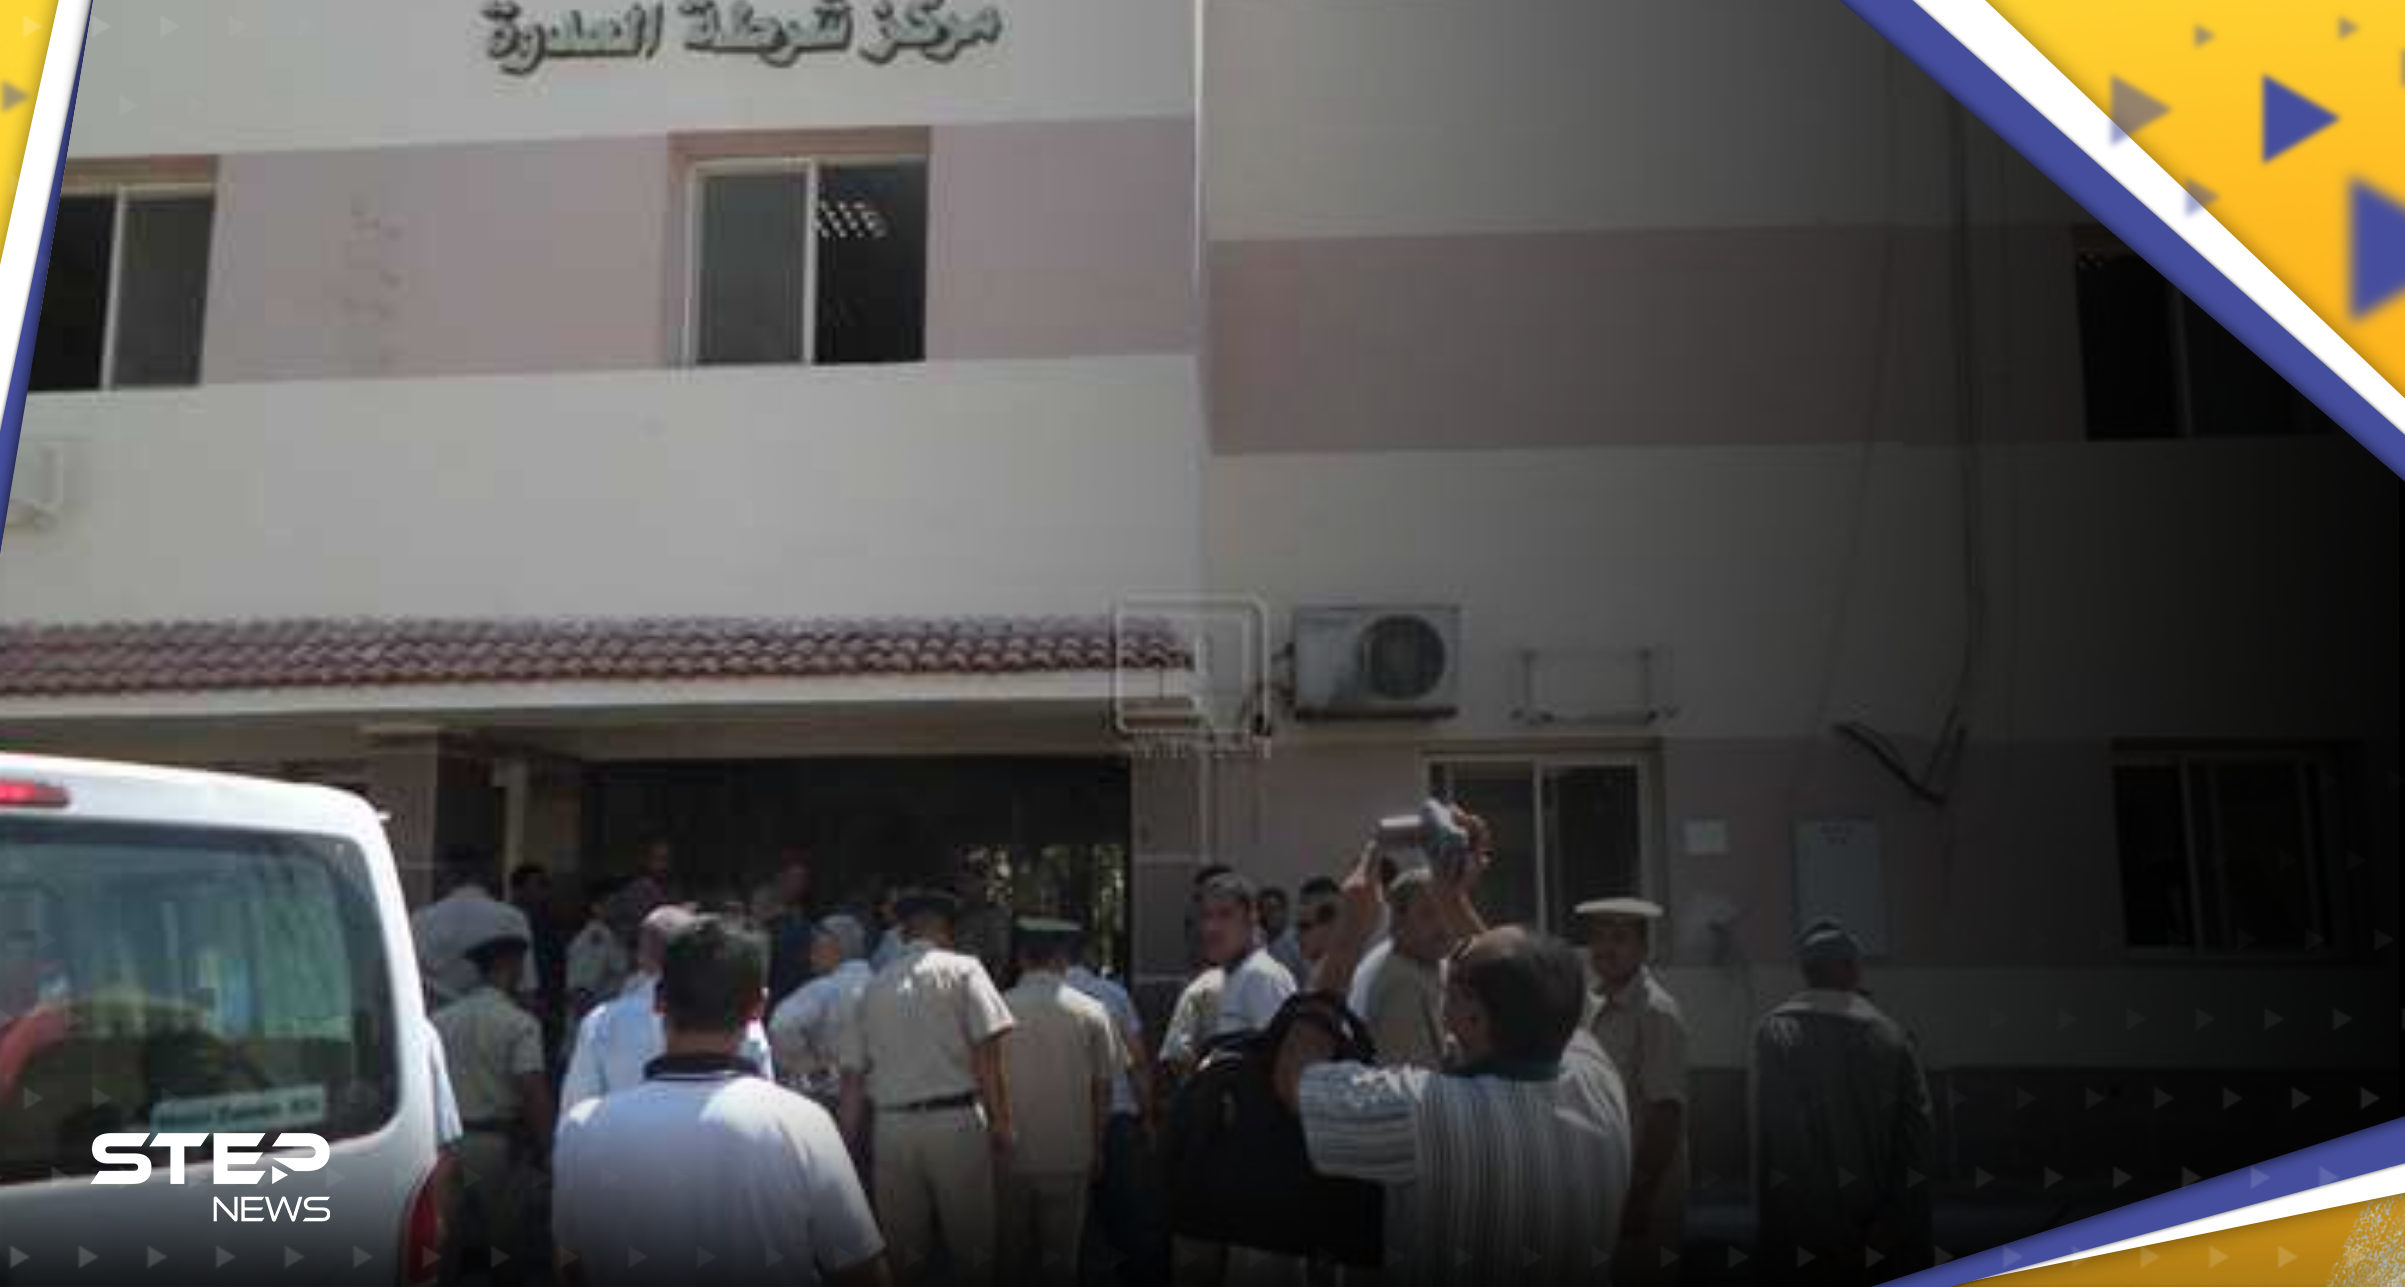 اقتحام عائلة "صعيدية" لسجن في مصر وهروب 11 سجينًا